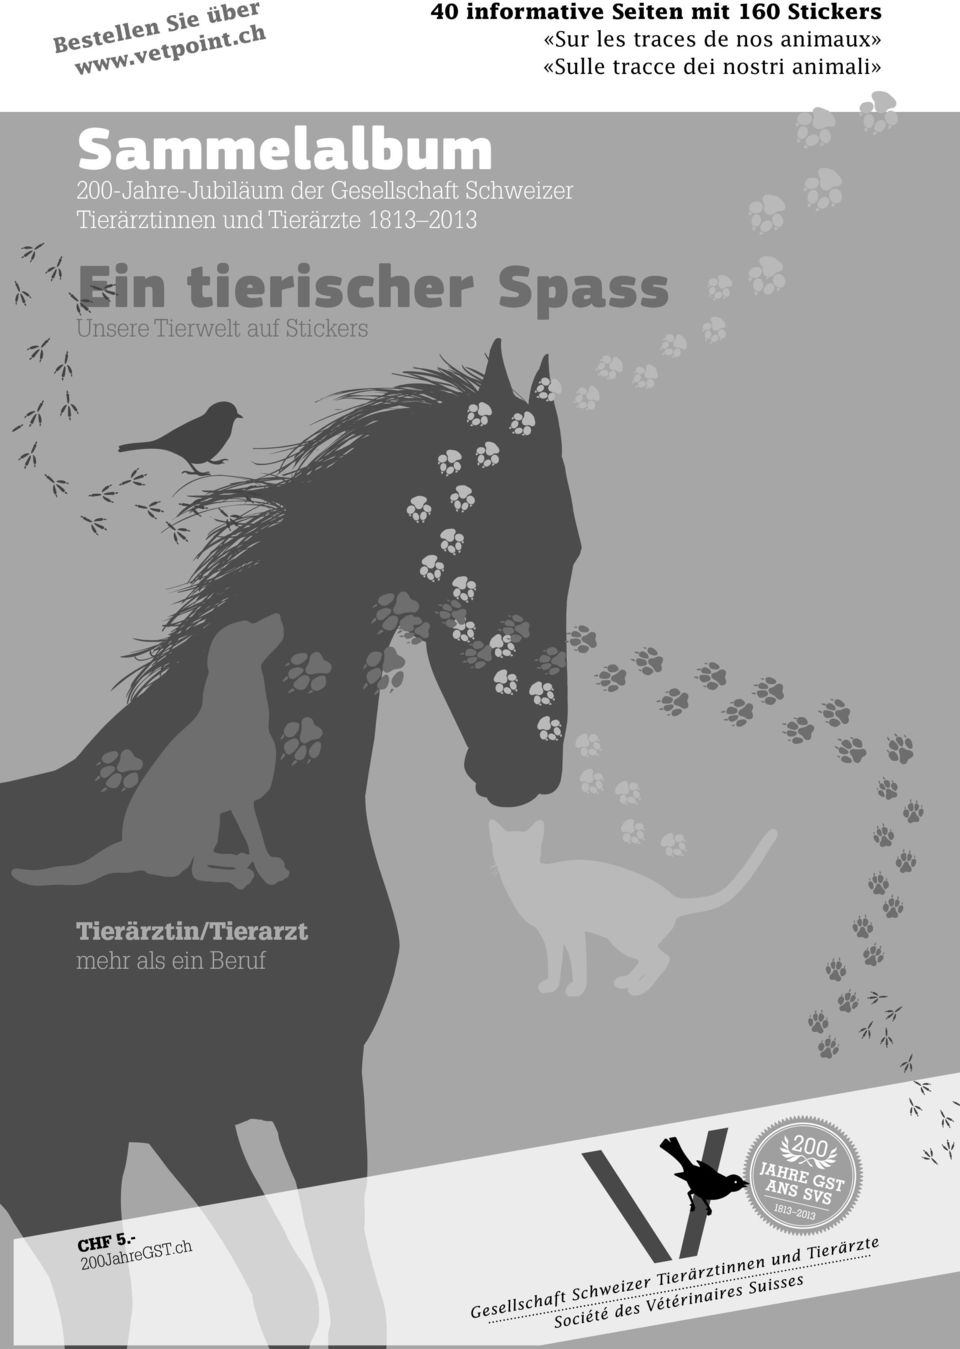 dei nostri animali» Sammelalbum 200-Jahre-Jubiläum der Gesellschaft Schweizer